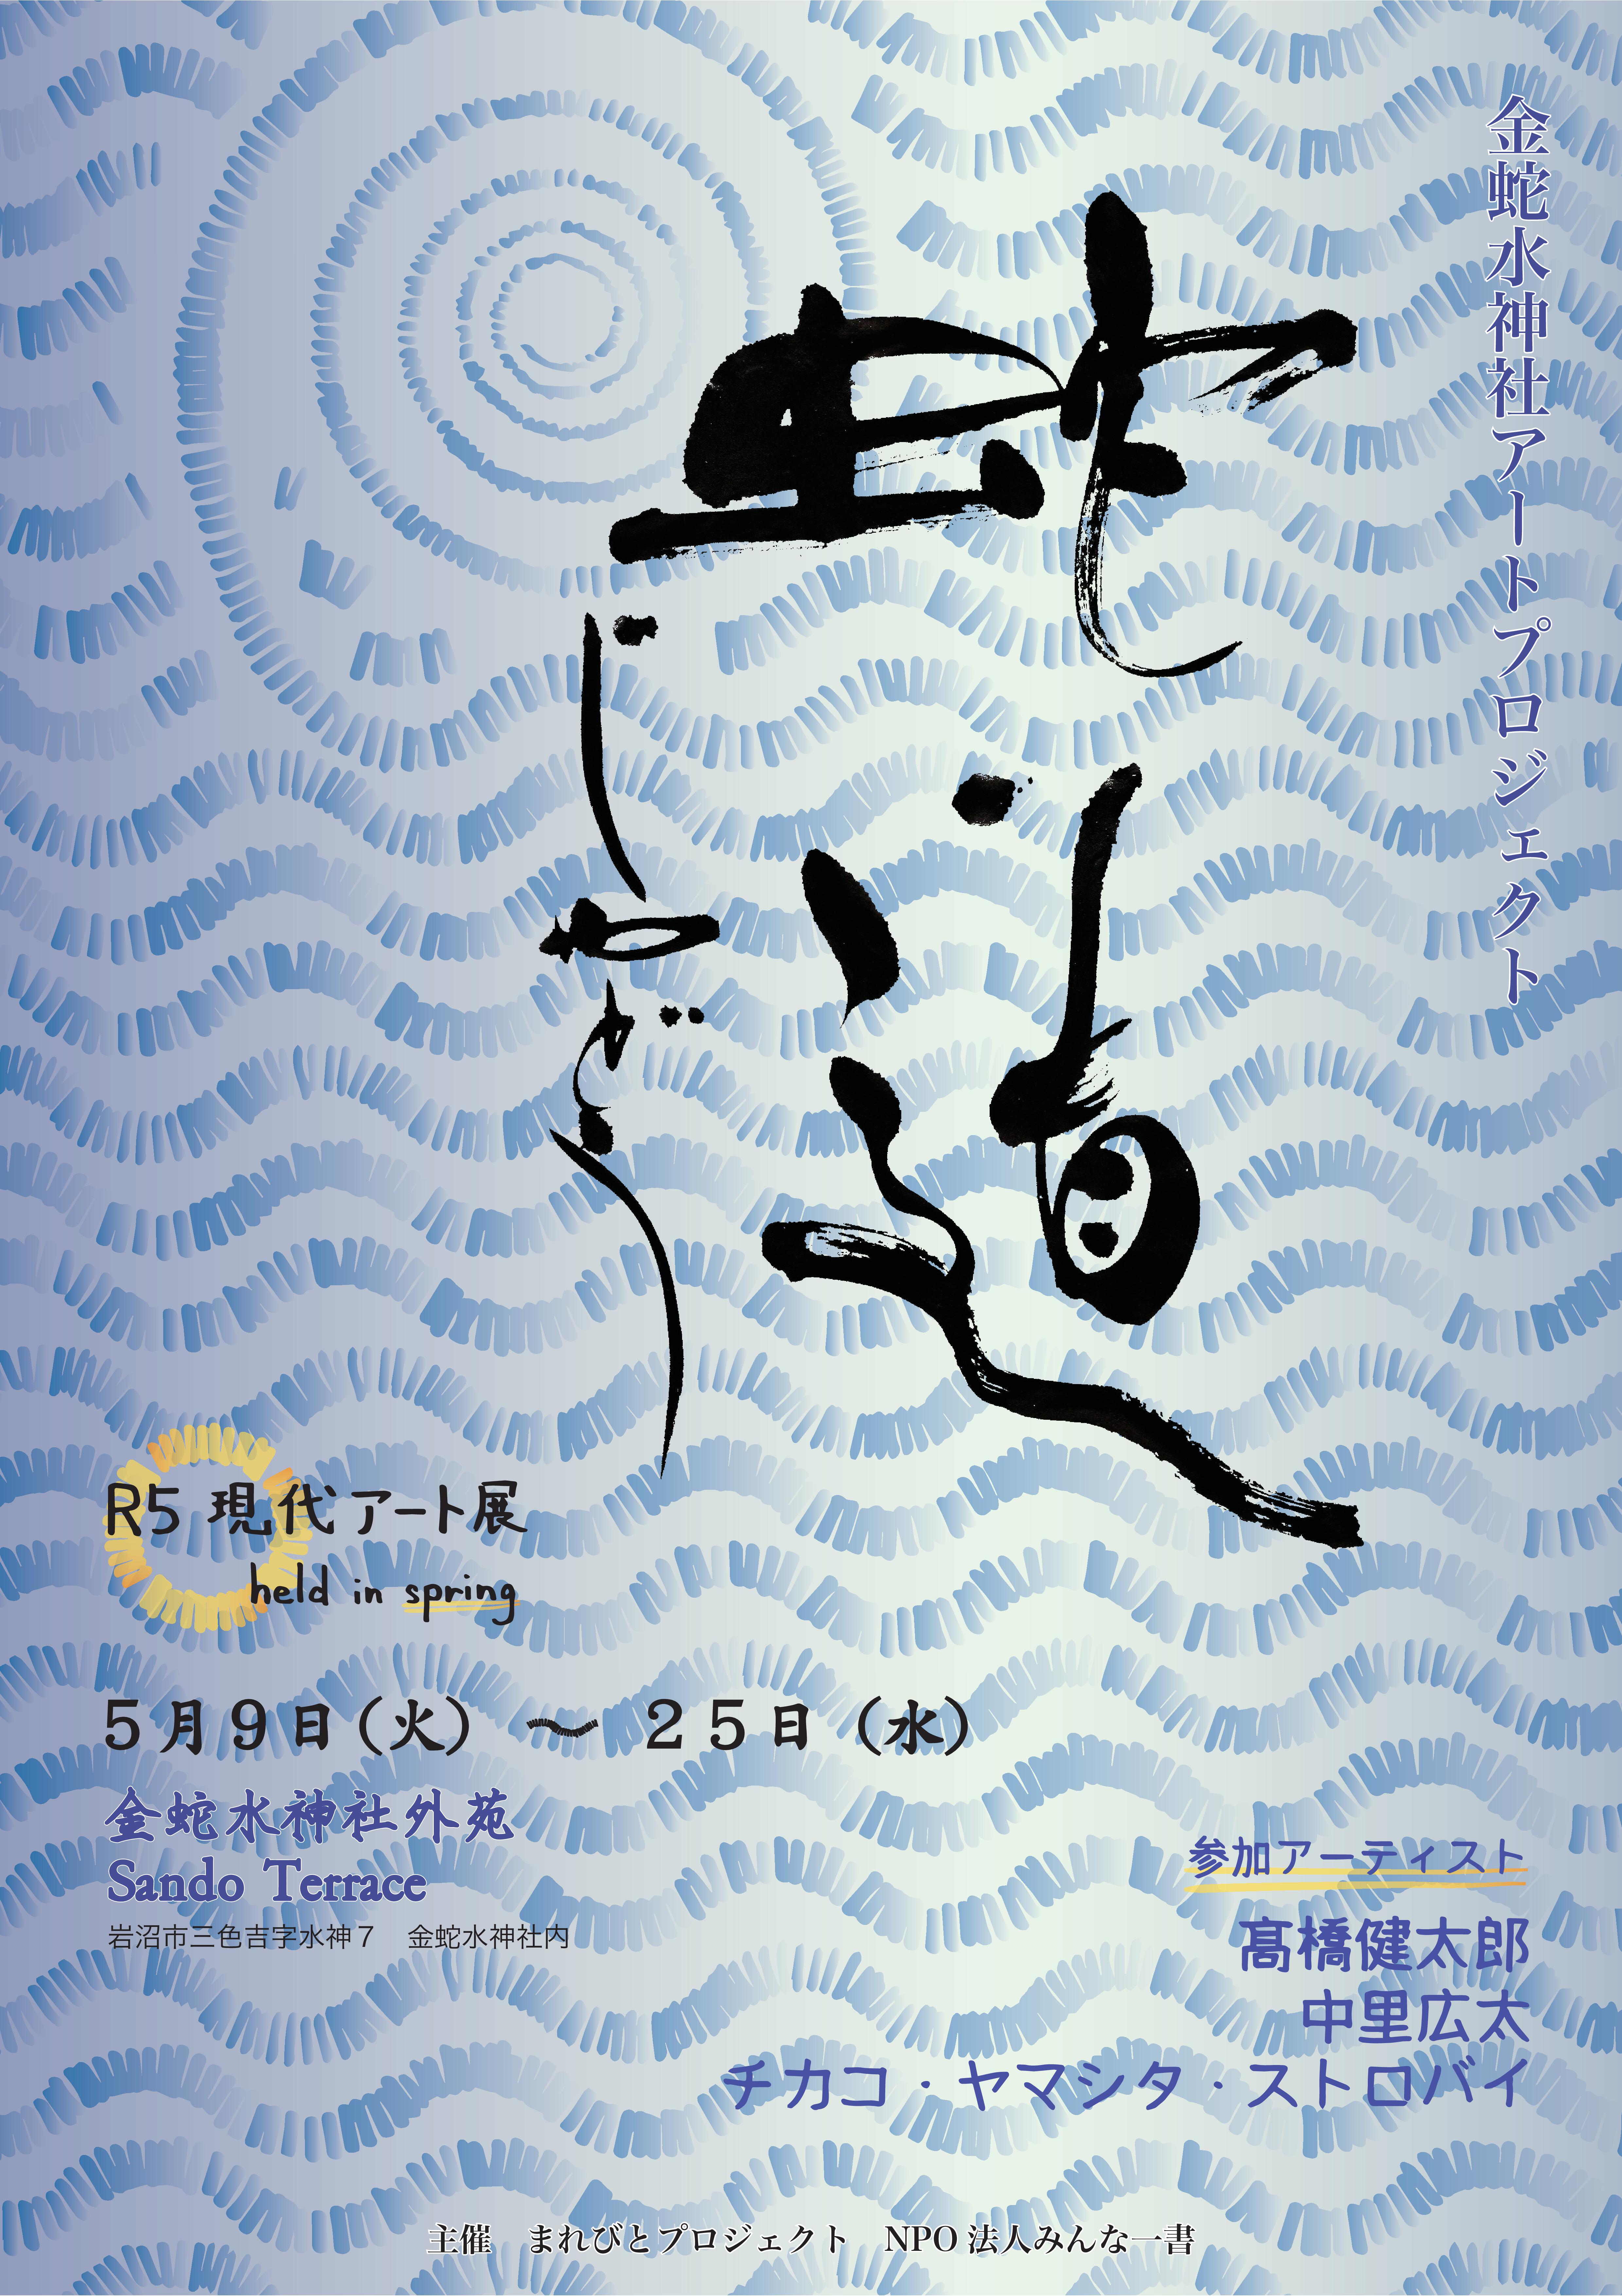 神社現代アート展「蛇道じゃどう」R5 Spring｜金蛇水神社のプレスリリース